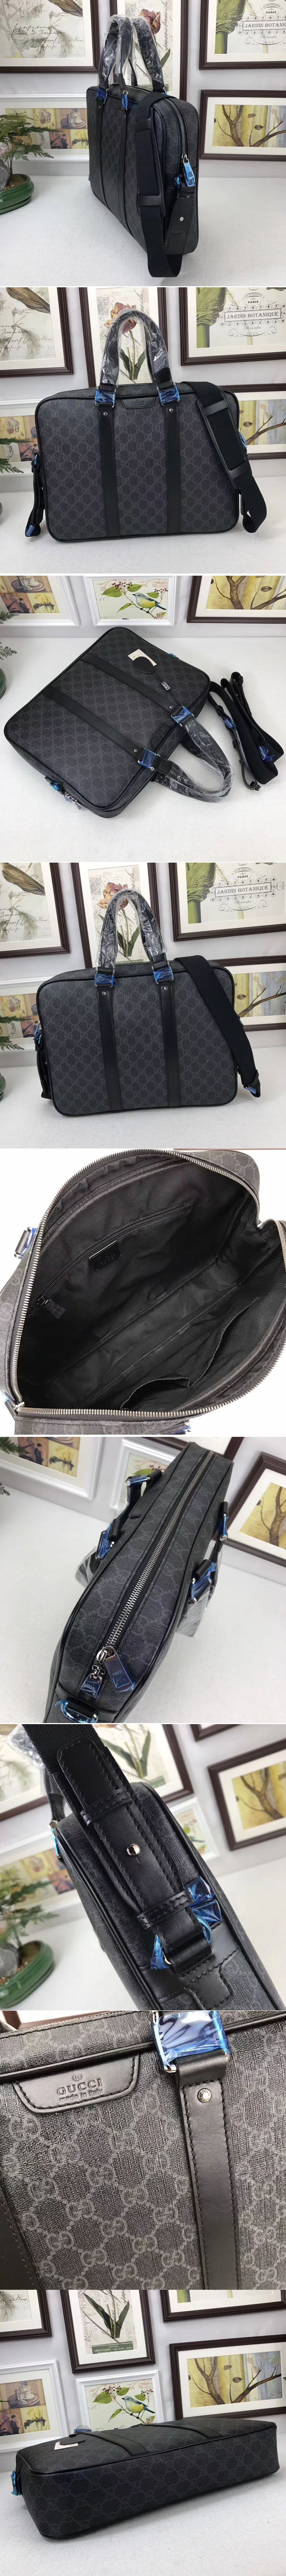 Replica Gucci 322287 GG Supreme Canvas Briefcase Bags Black